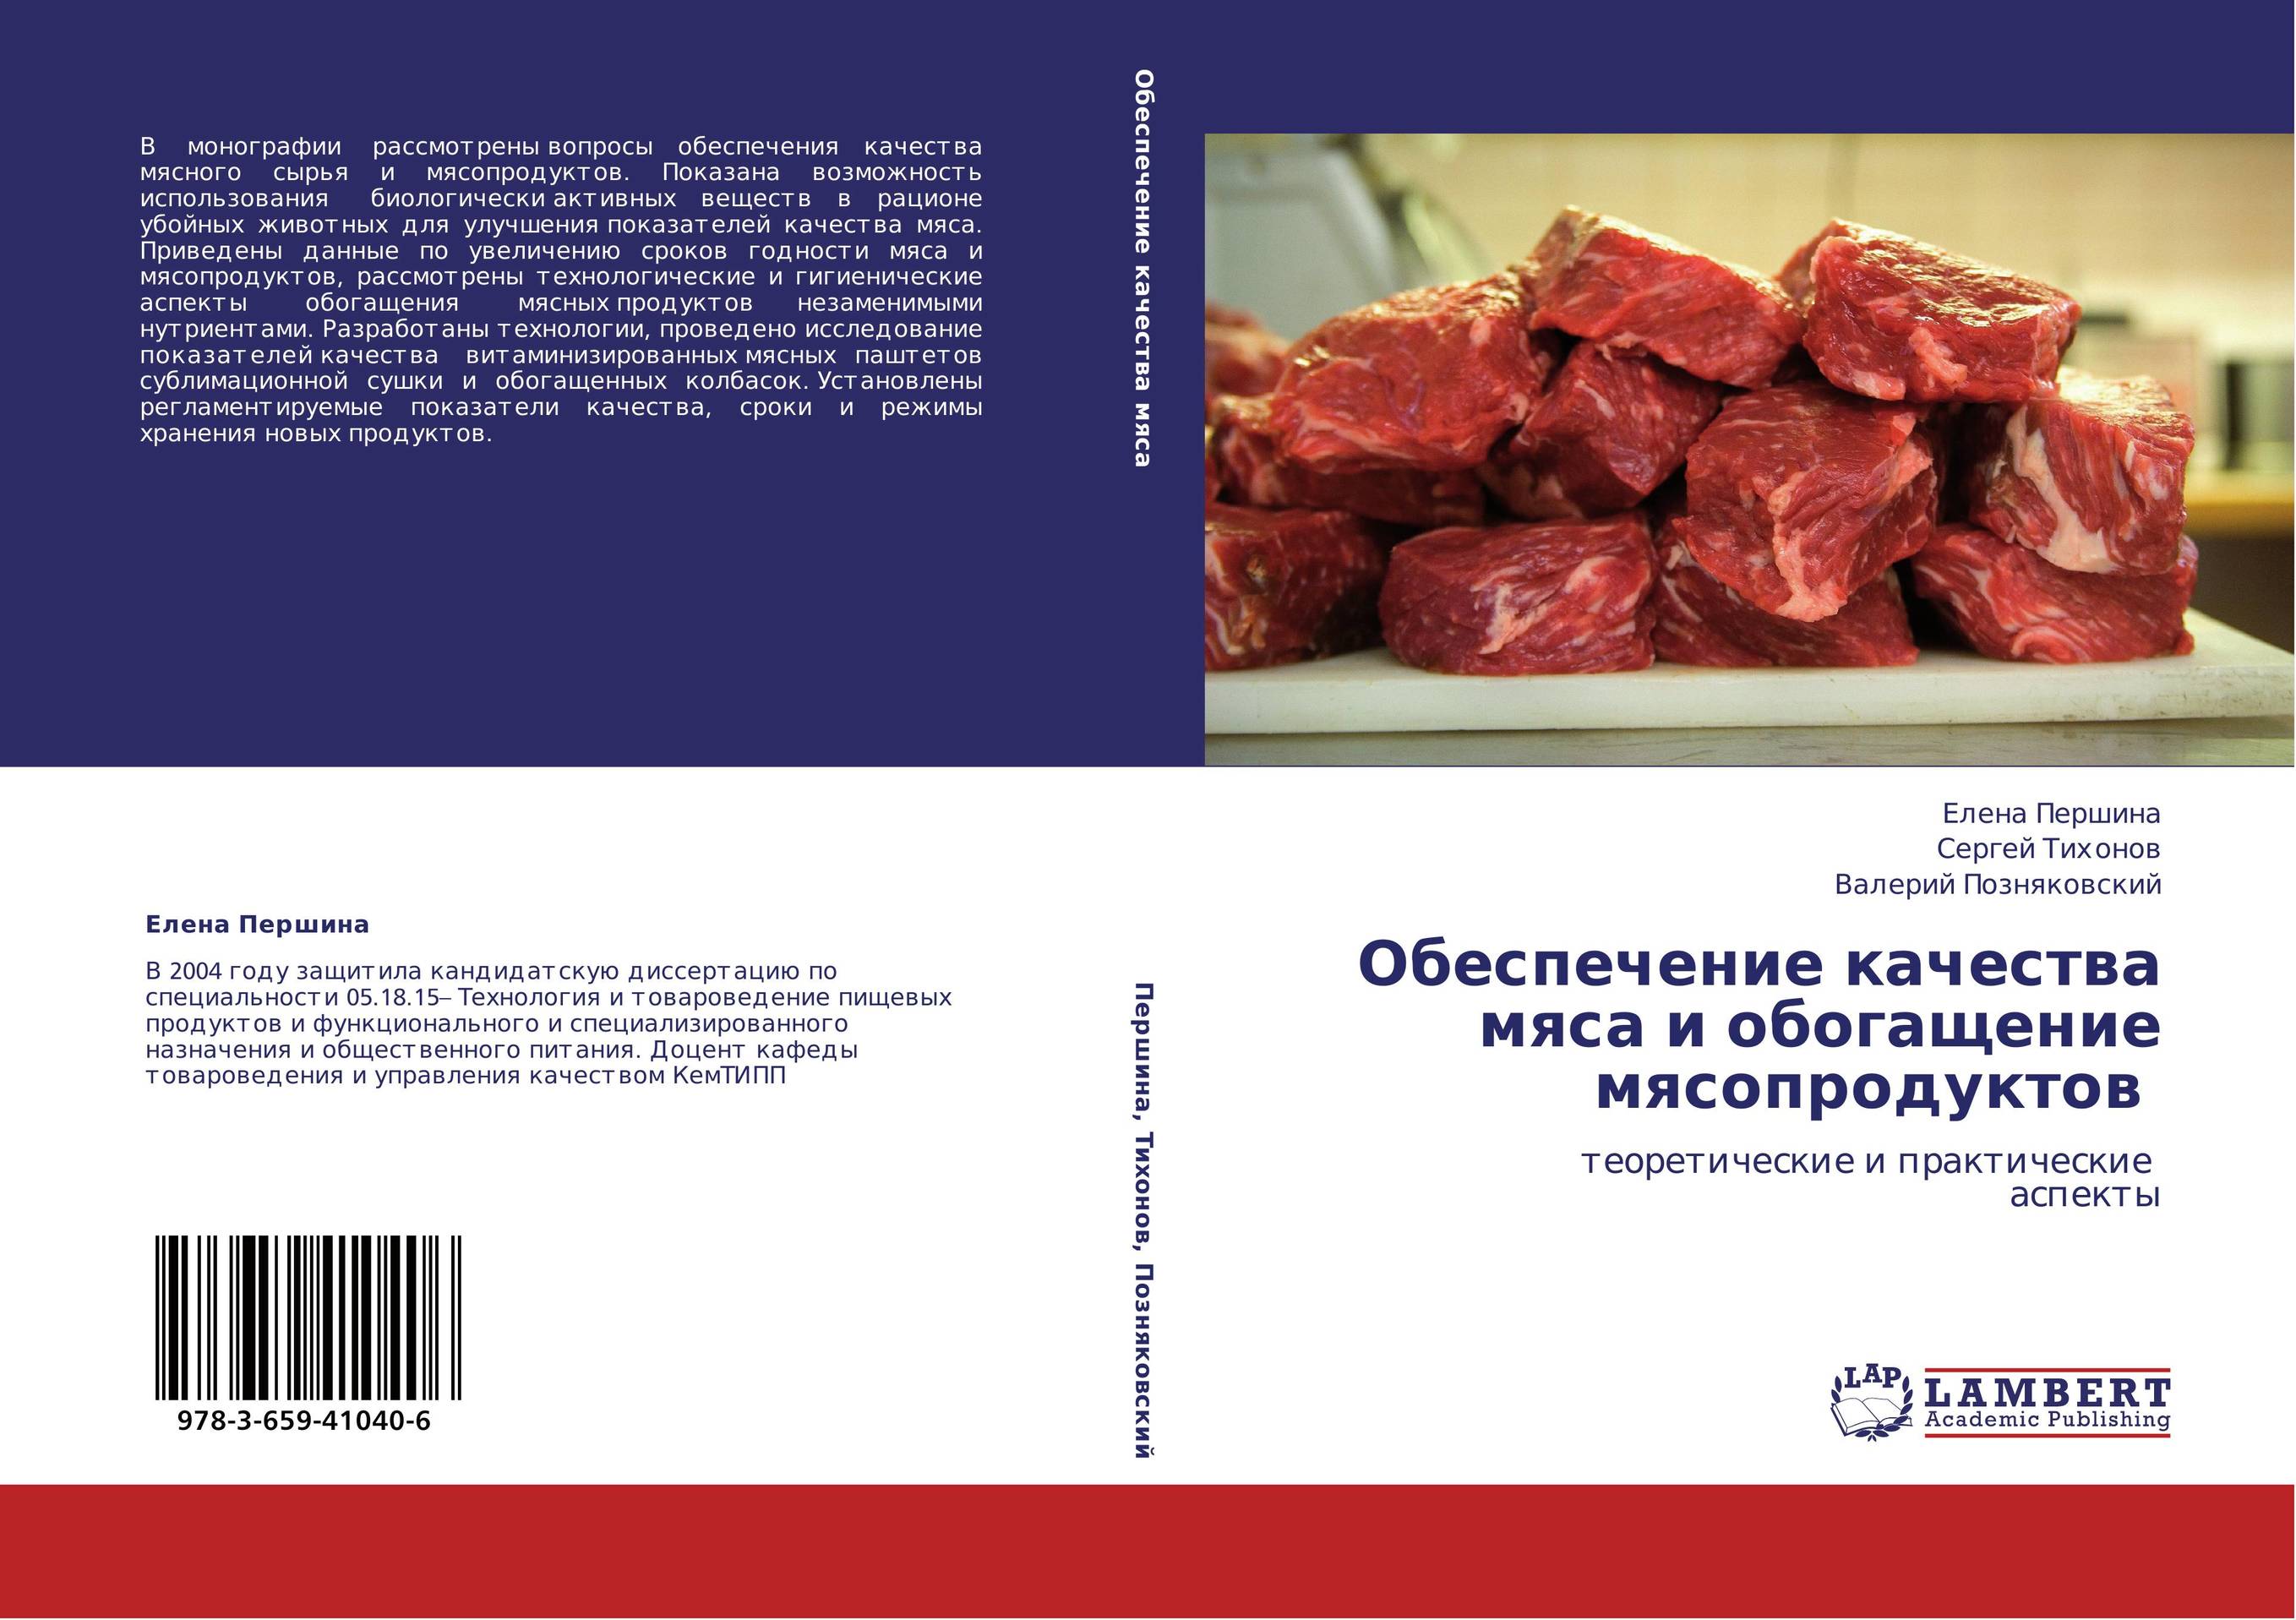 Обеспечение качества мяса и обогащение мясопродуктов. Теоретические и практические аспекты.